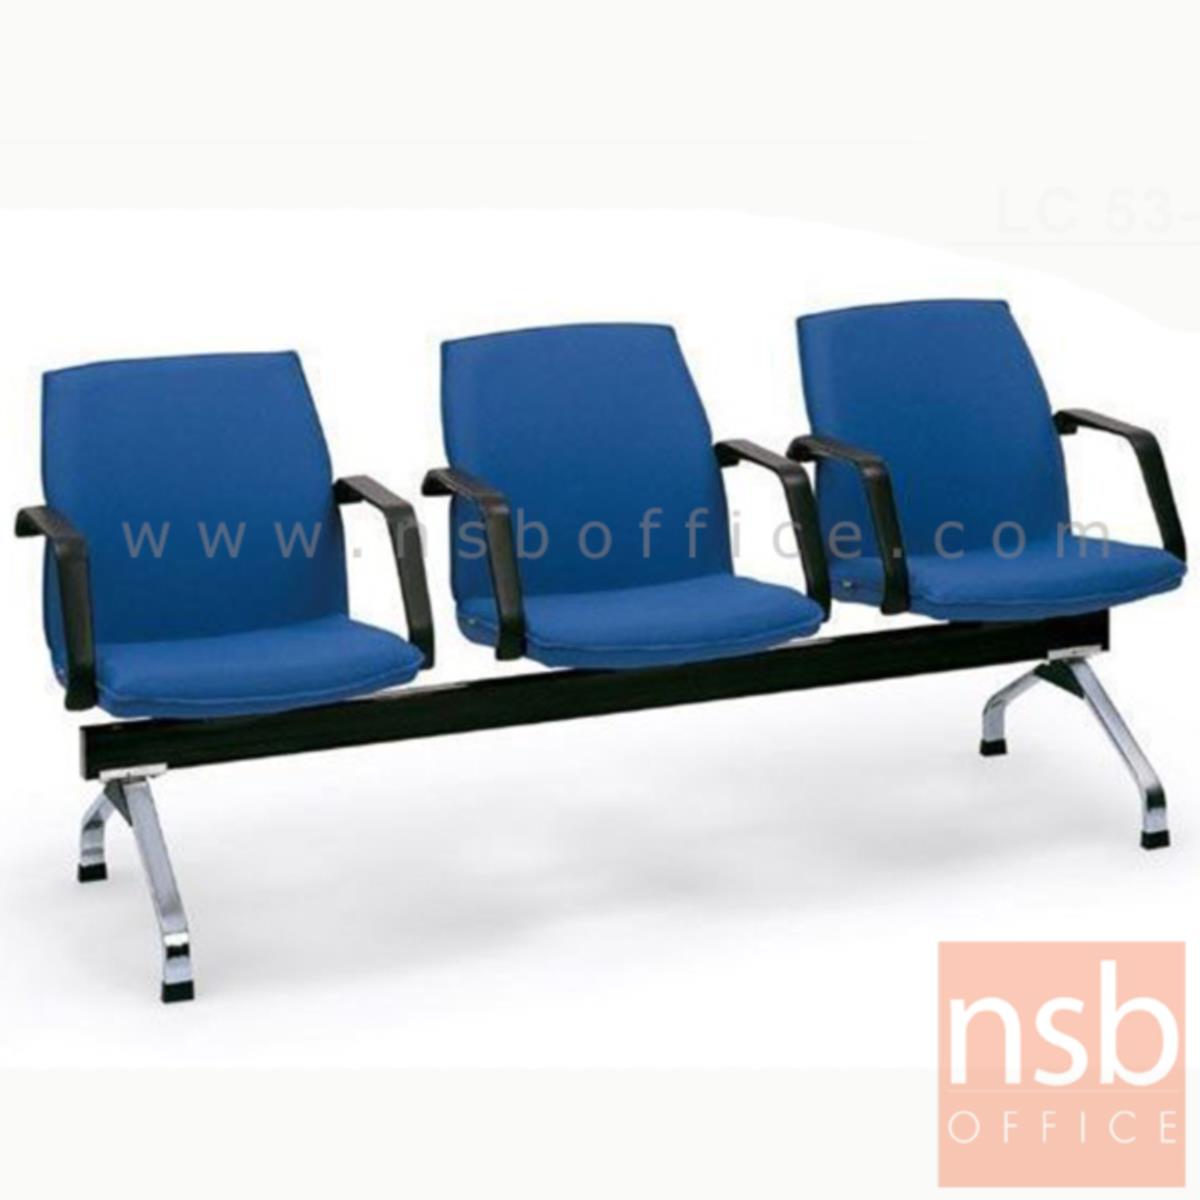 B06A072:เก้าอี้นั่งคอยหุ้มหนังเทียม รุ่น Lifan (ลี่ฟาน) 2 ,3 ,4 ที่นั่ง ขนาด 132W ,188W ,254W cm. ขาเหล็ก